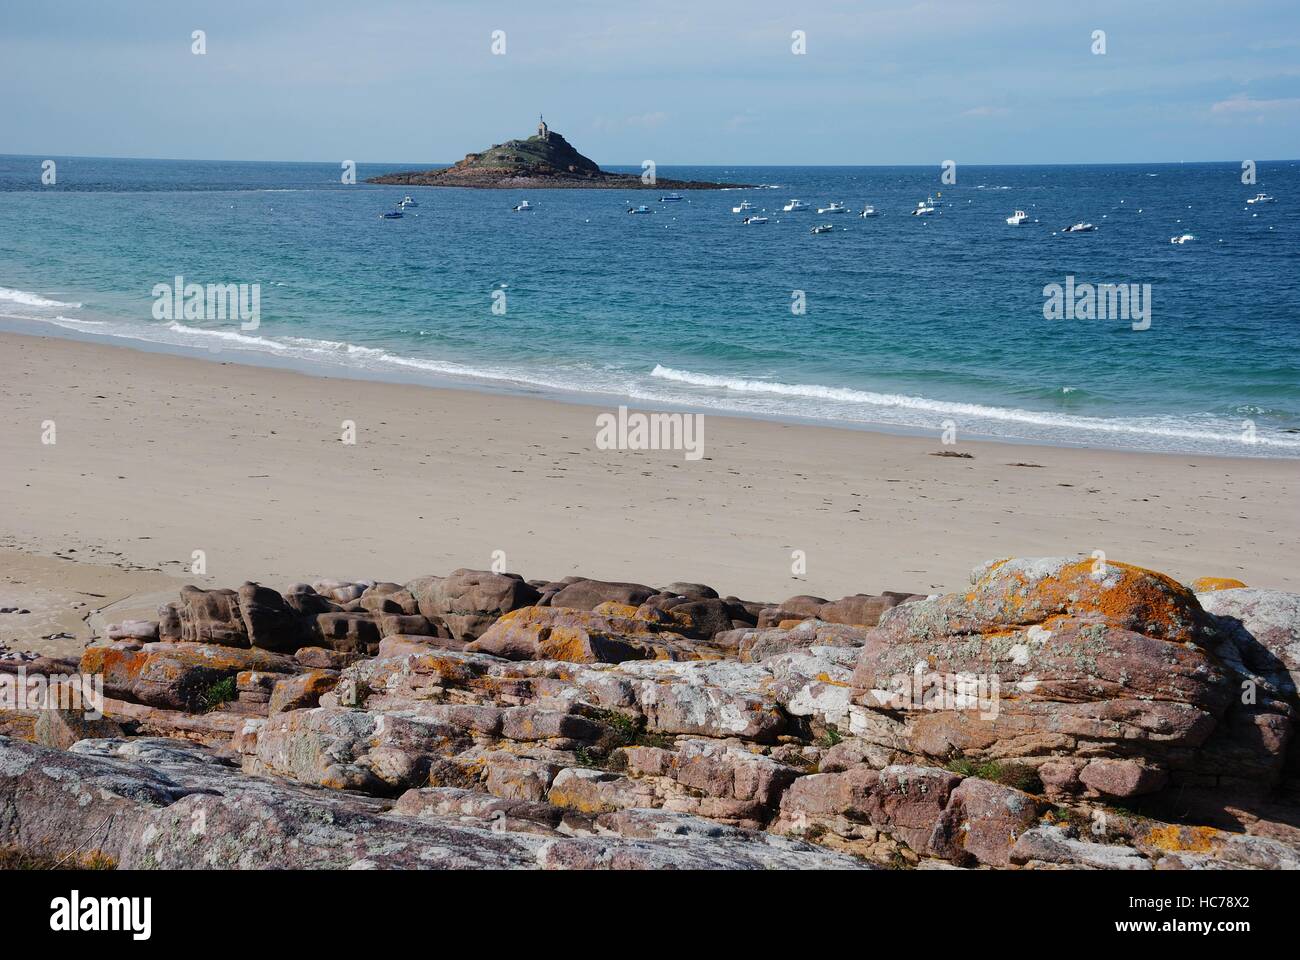 Erquy, Les Hopitaux, 'îlot Saint-Michel 22 Stock Photo